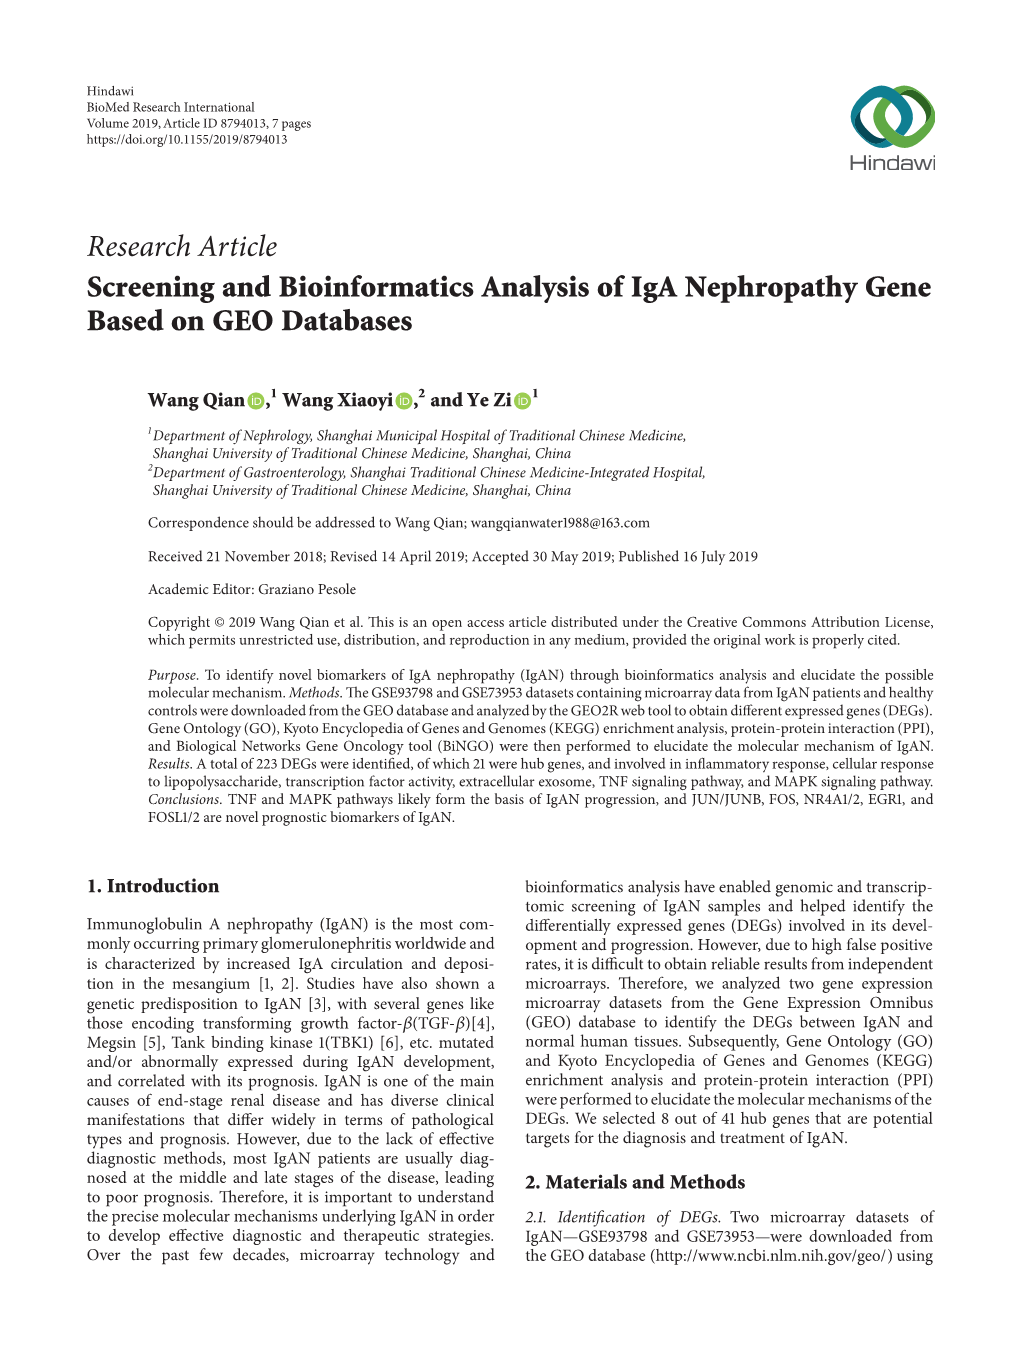 Screening and Bioinformatics Analysis of Iga Nephropathy Gene Based on GEO Databases